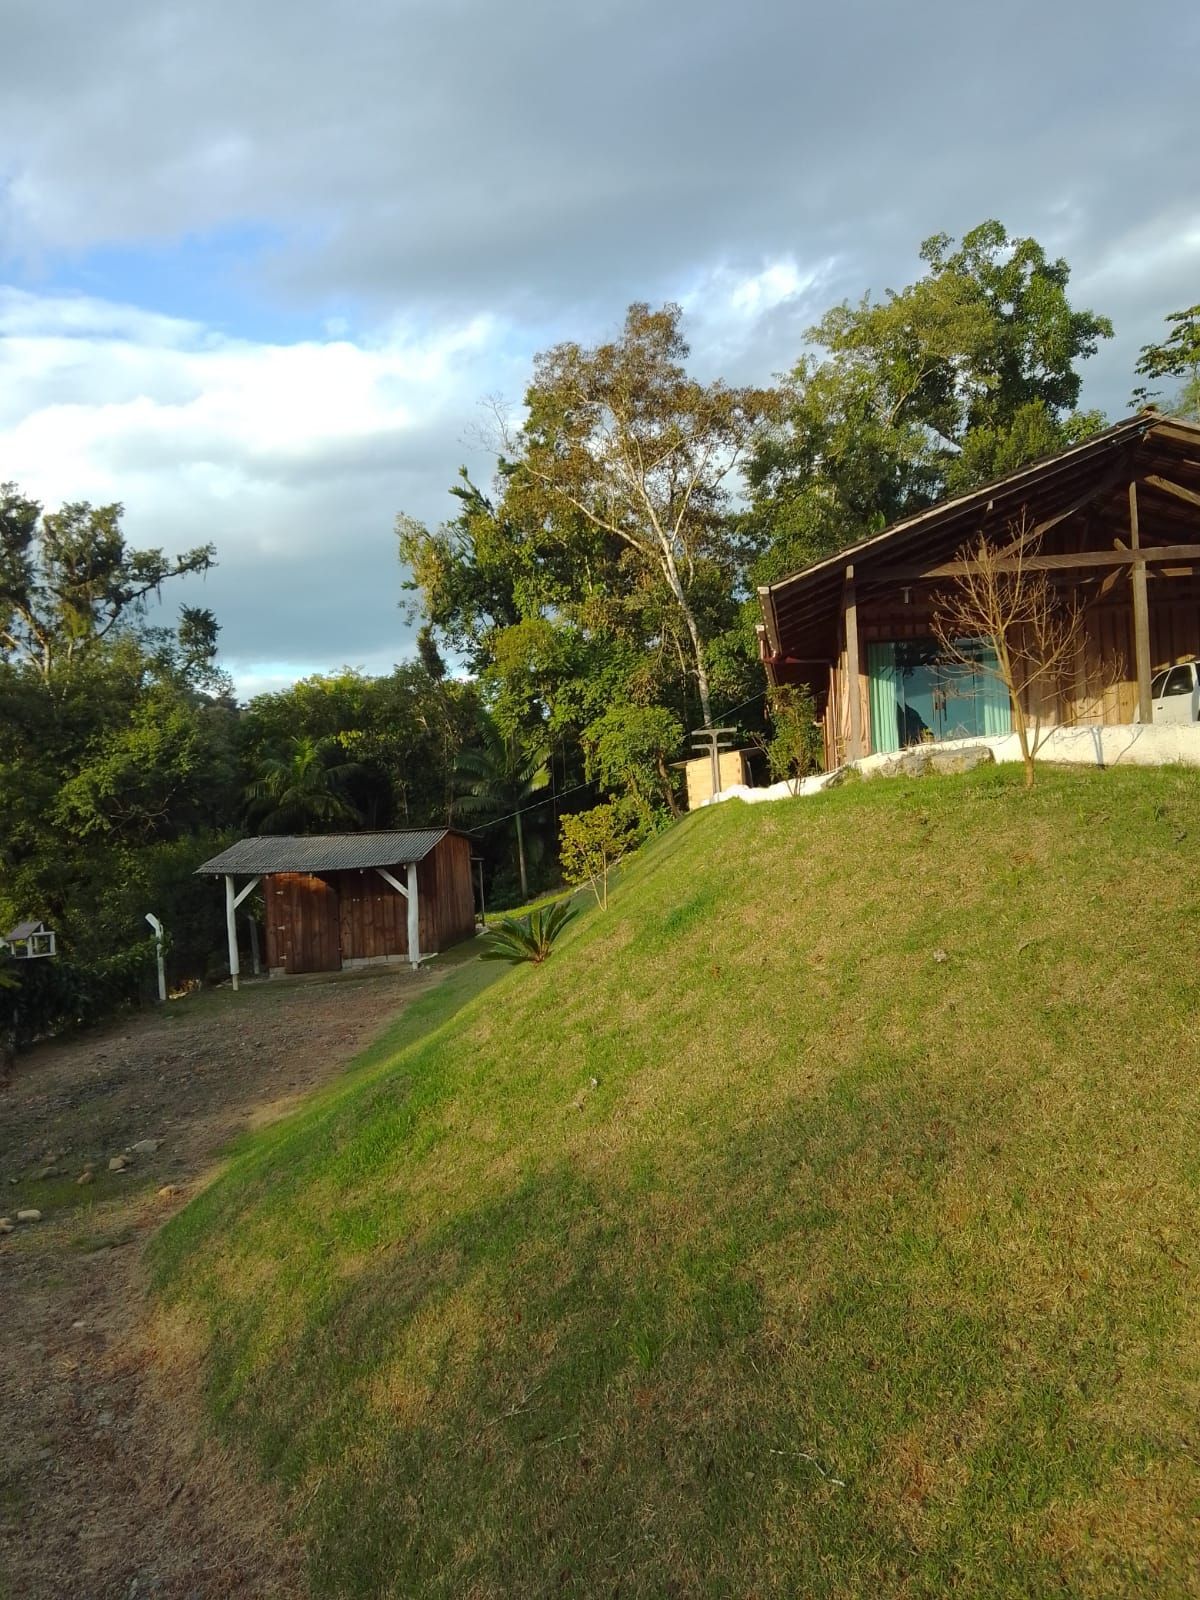 Casa  venda  no Rio Branco - Guaramirim, SC. Imveis